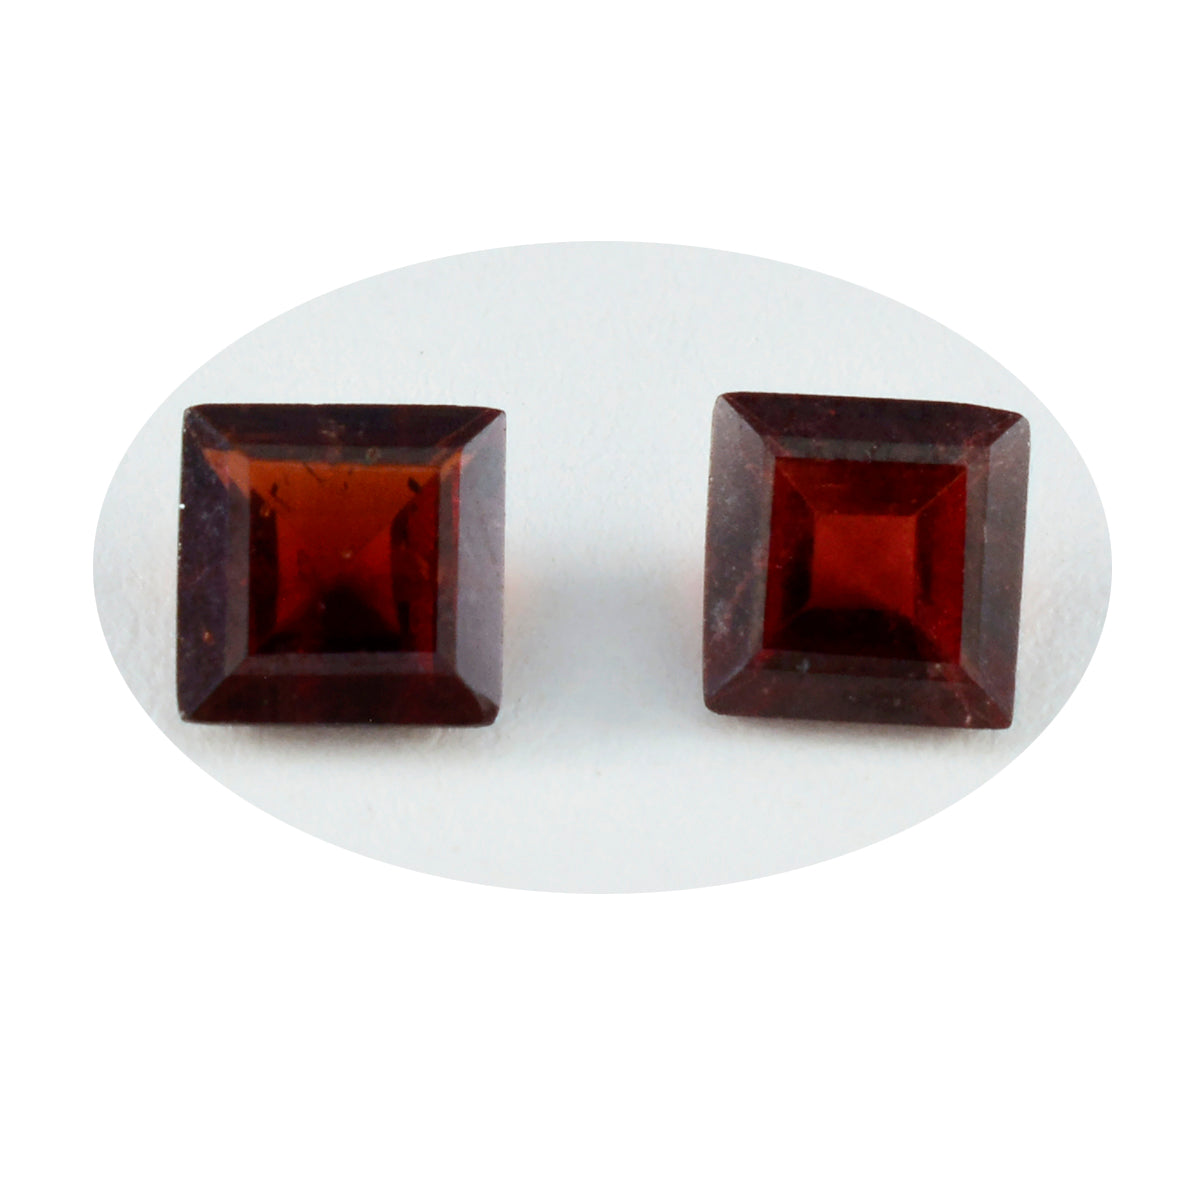 Riyogems 1 Stück natürlicher roter Granat, facettiert, 10 x 10 mm, quadratische Form, gut aussehende, hochwertige lose Edelsteine